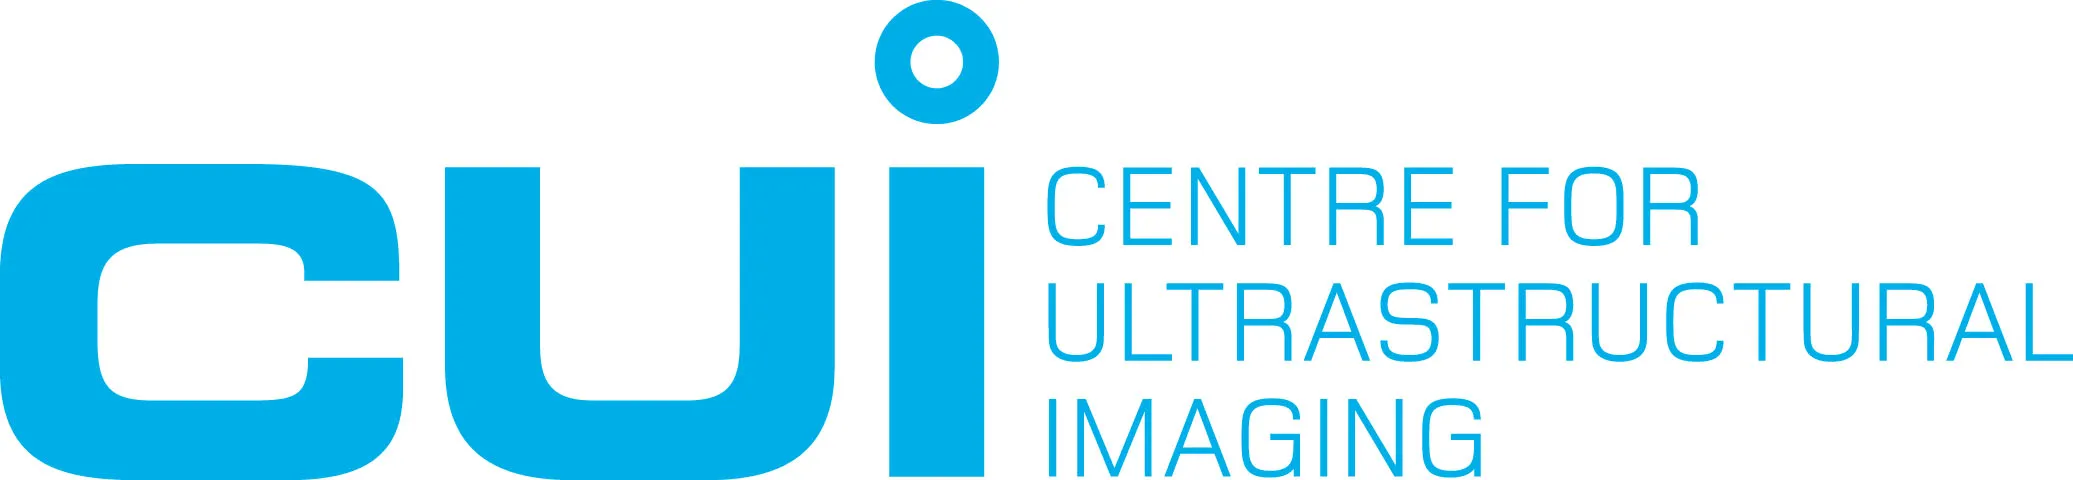 Centre for Ultrastructural Imaging logo